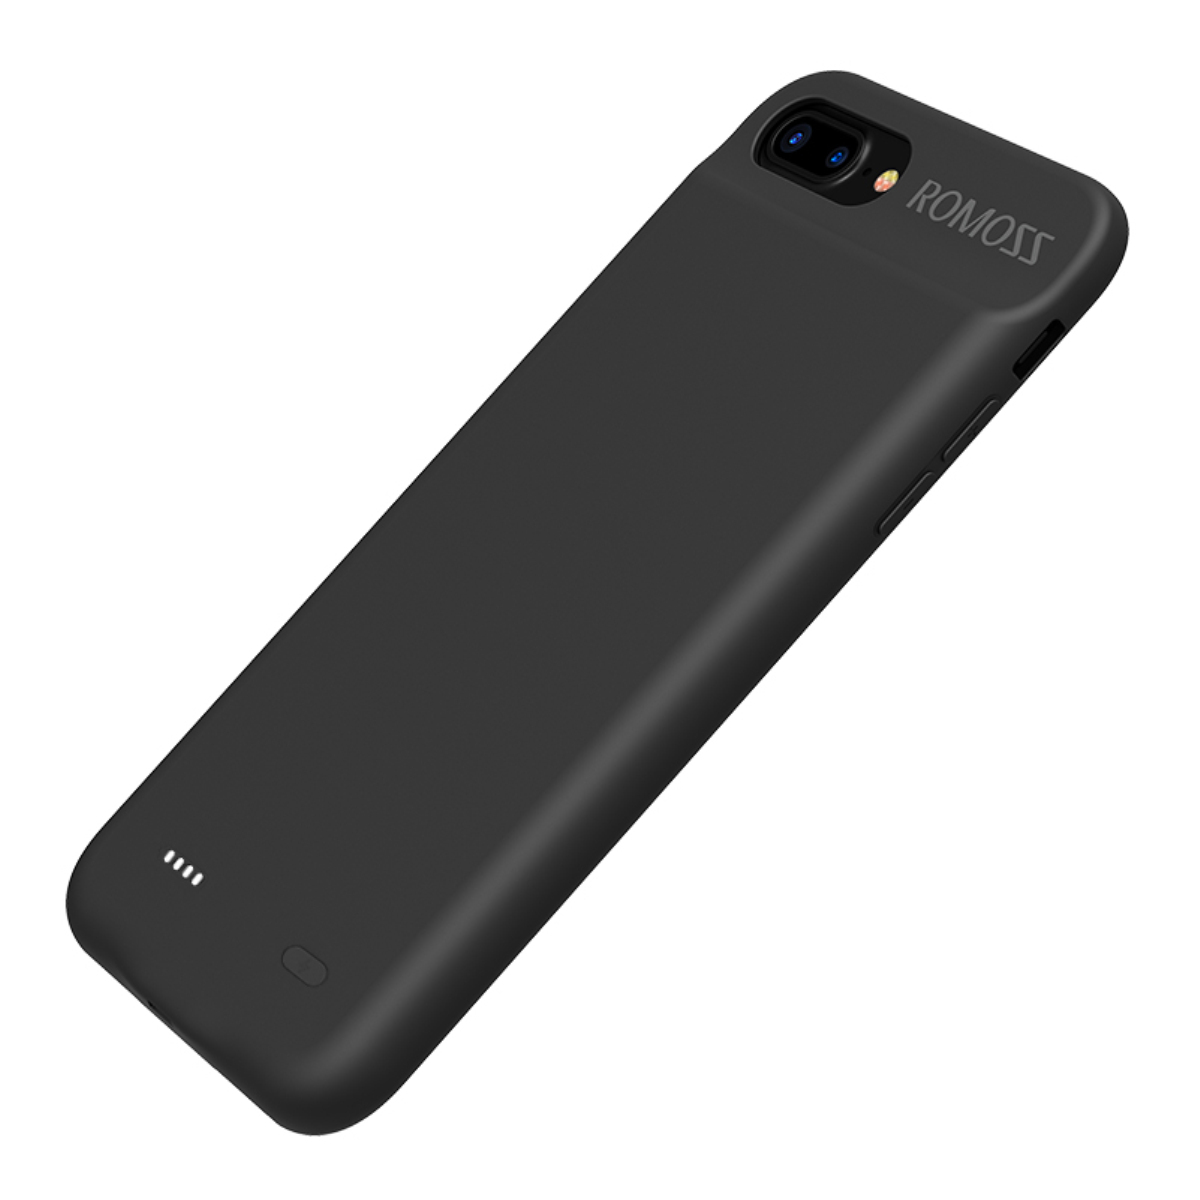 罗马仕(ROMOSS)EC80 无线背夹电池 iphone7P/8P 8000毫安 苹果充电宝/手机壳移动电源 黑色高清大图